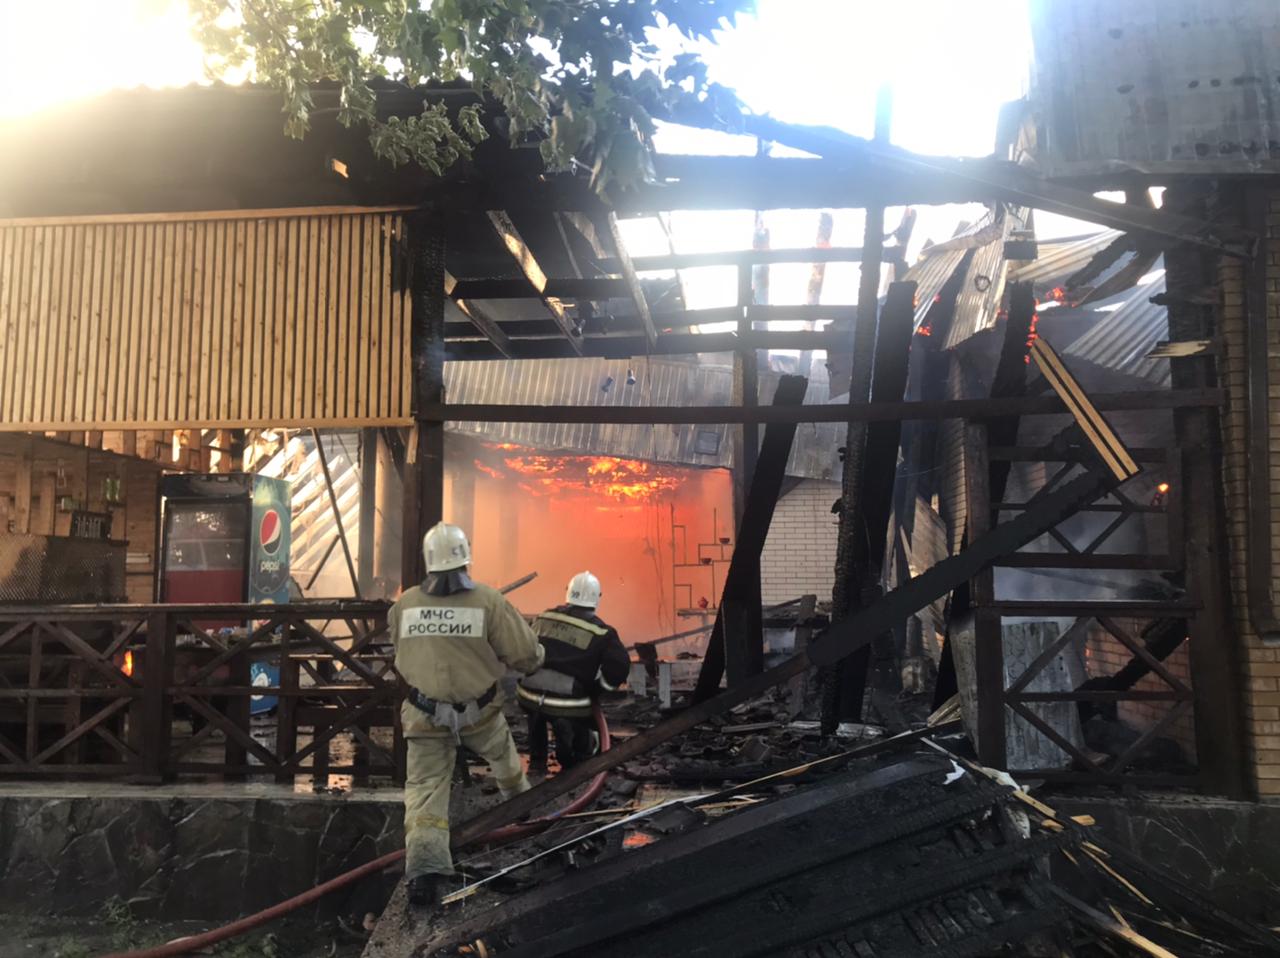 Так выглядело сгоревшее кафе во время пожара